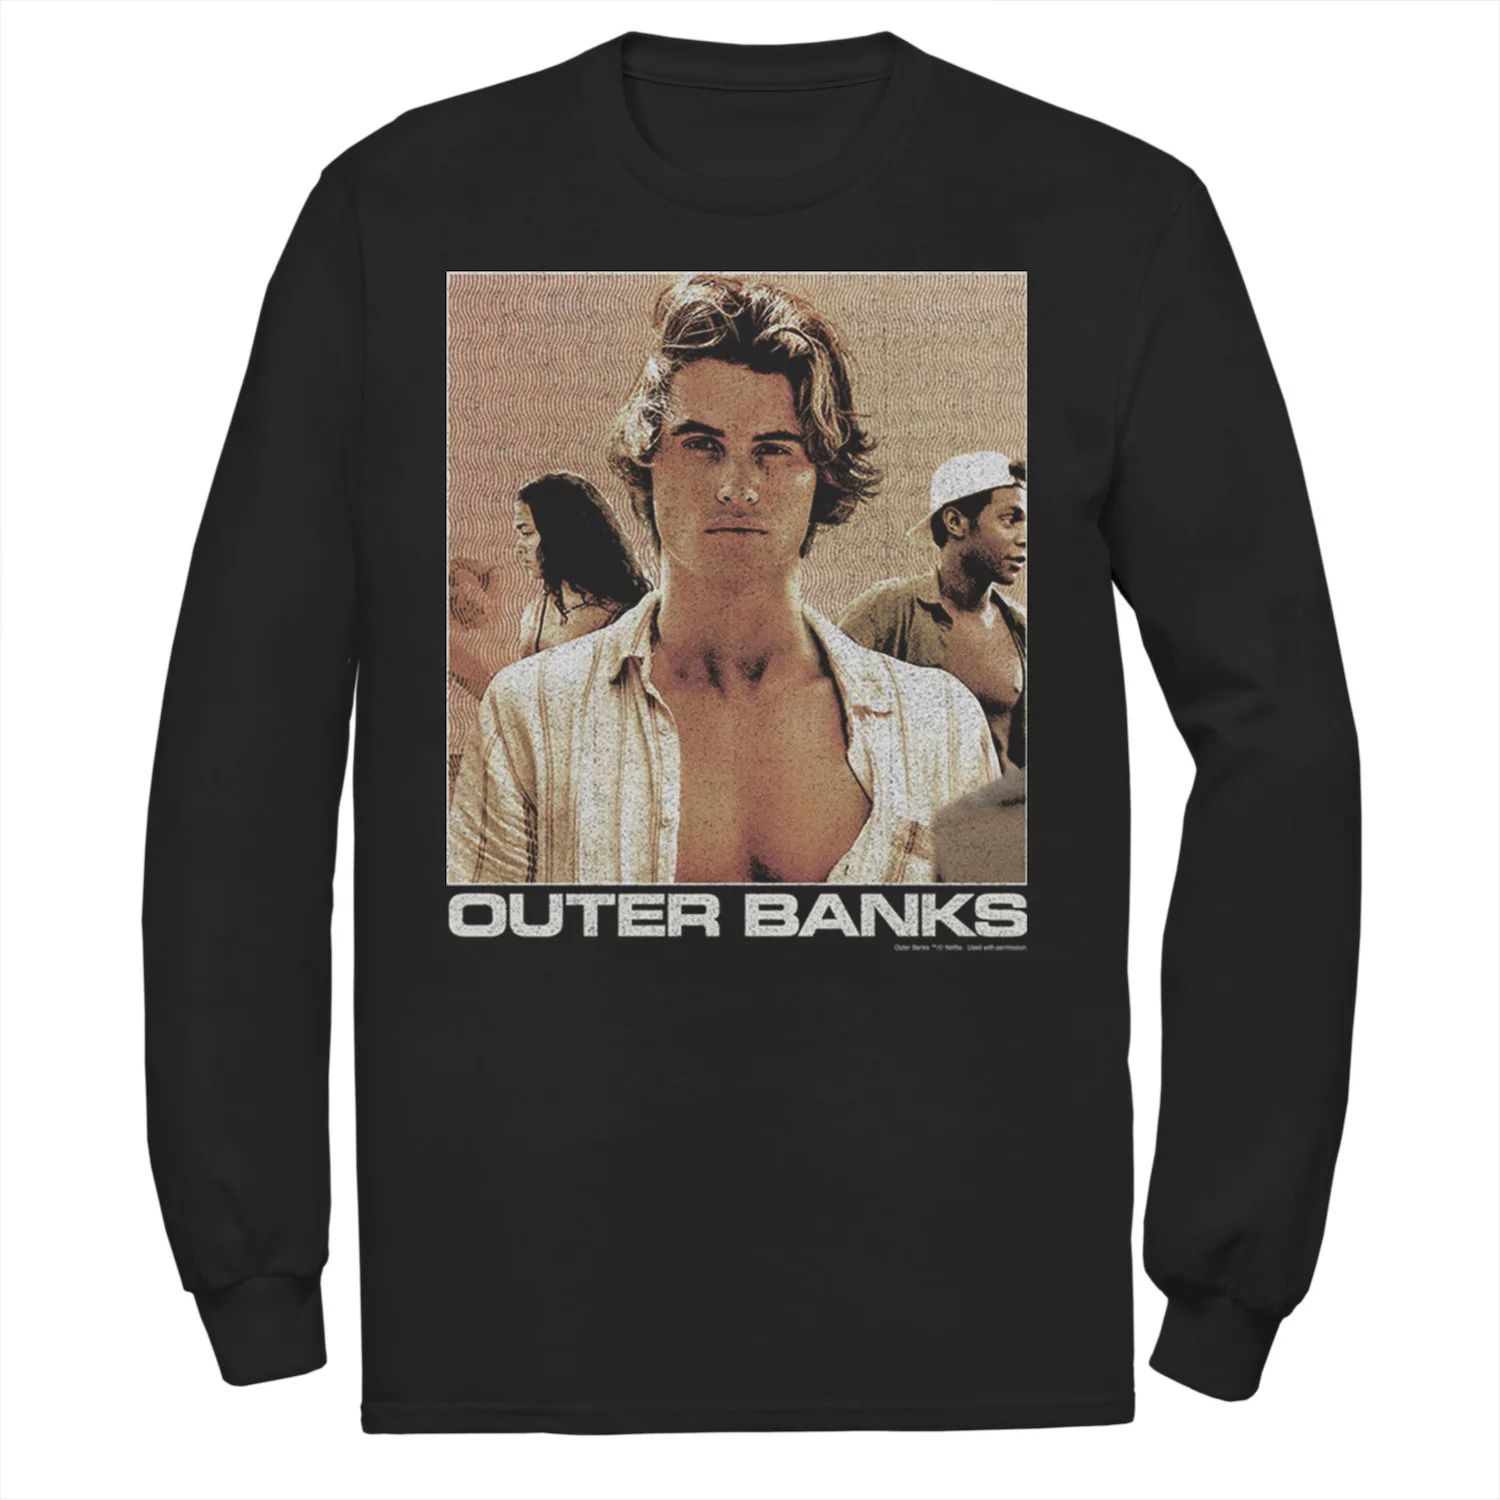 Мужская футболка Outer Banks John B с портретом Licensed Character